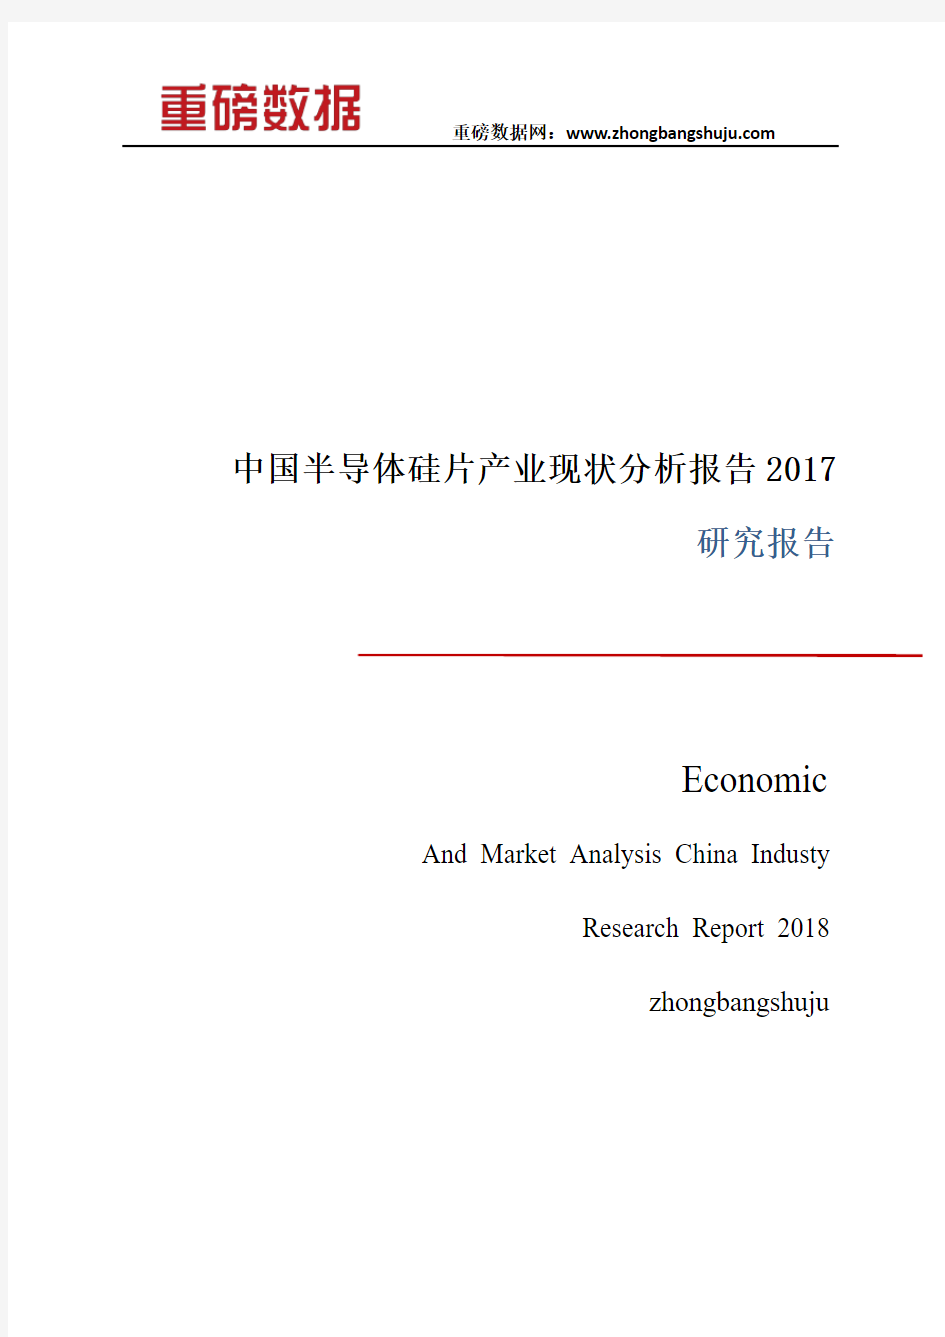 中国半导体硅片产业现状分析研究报告2017-2018